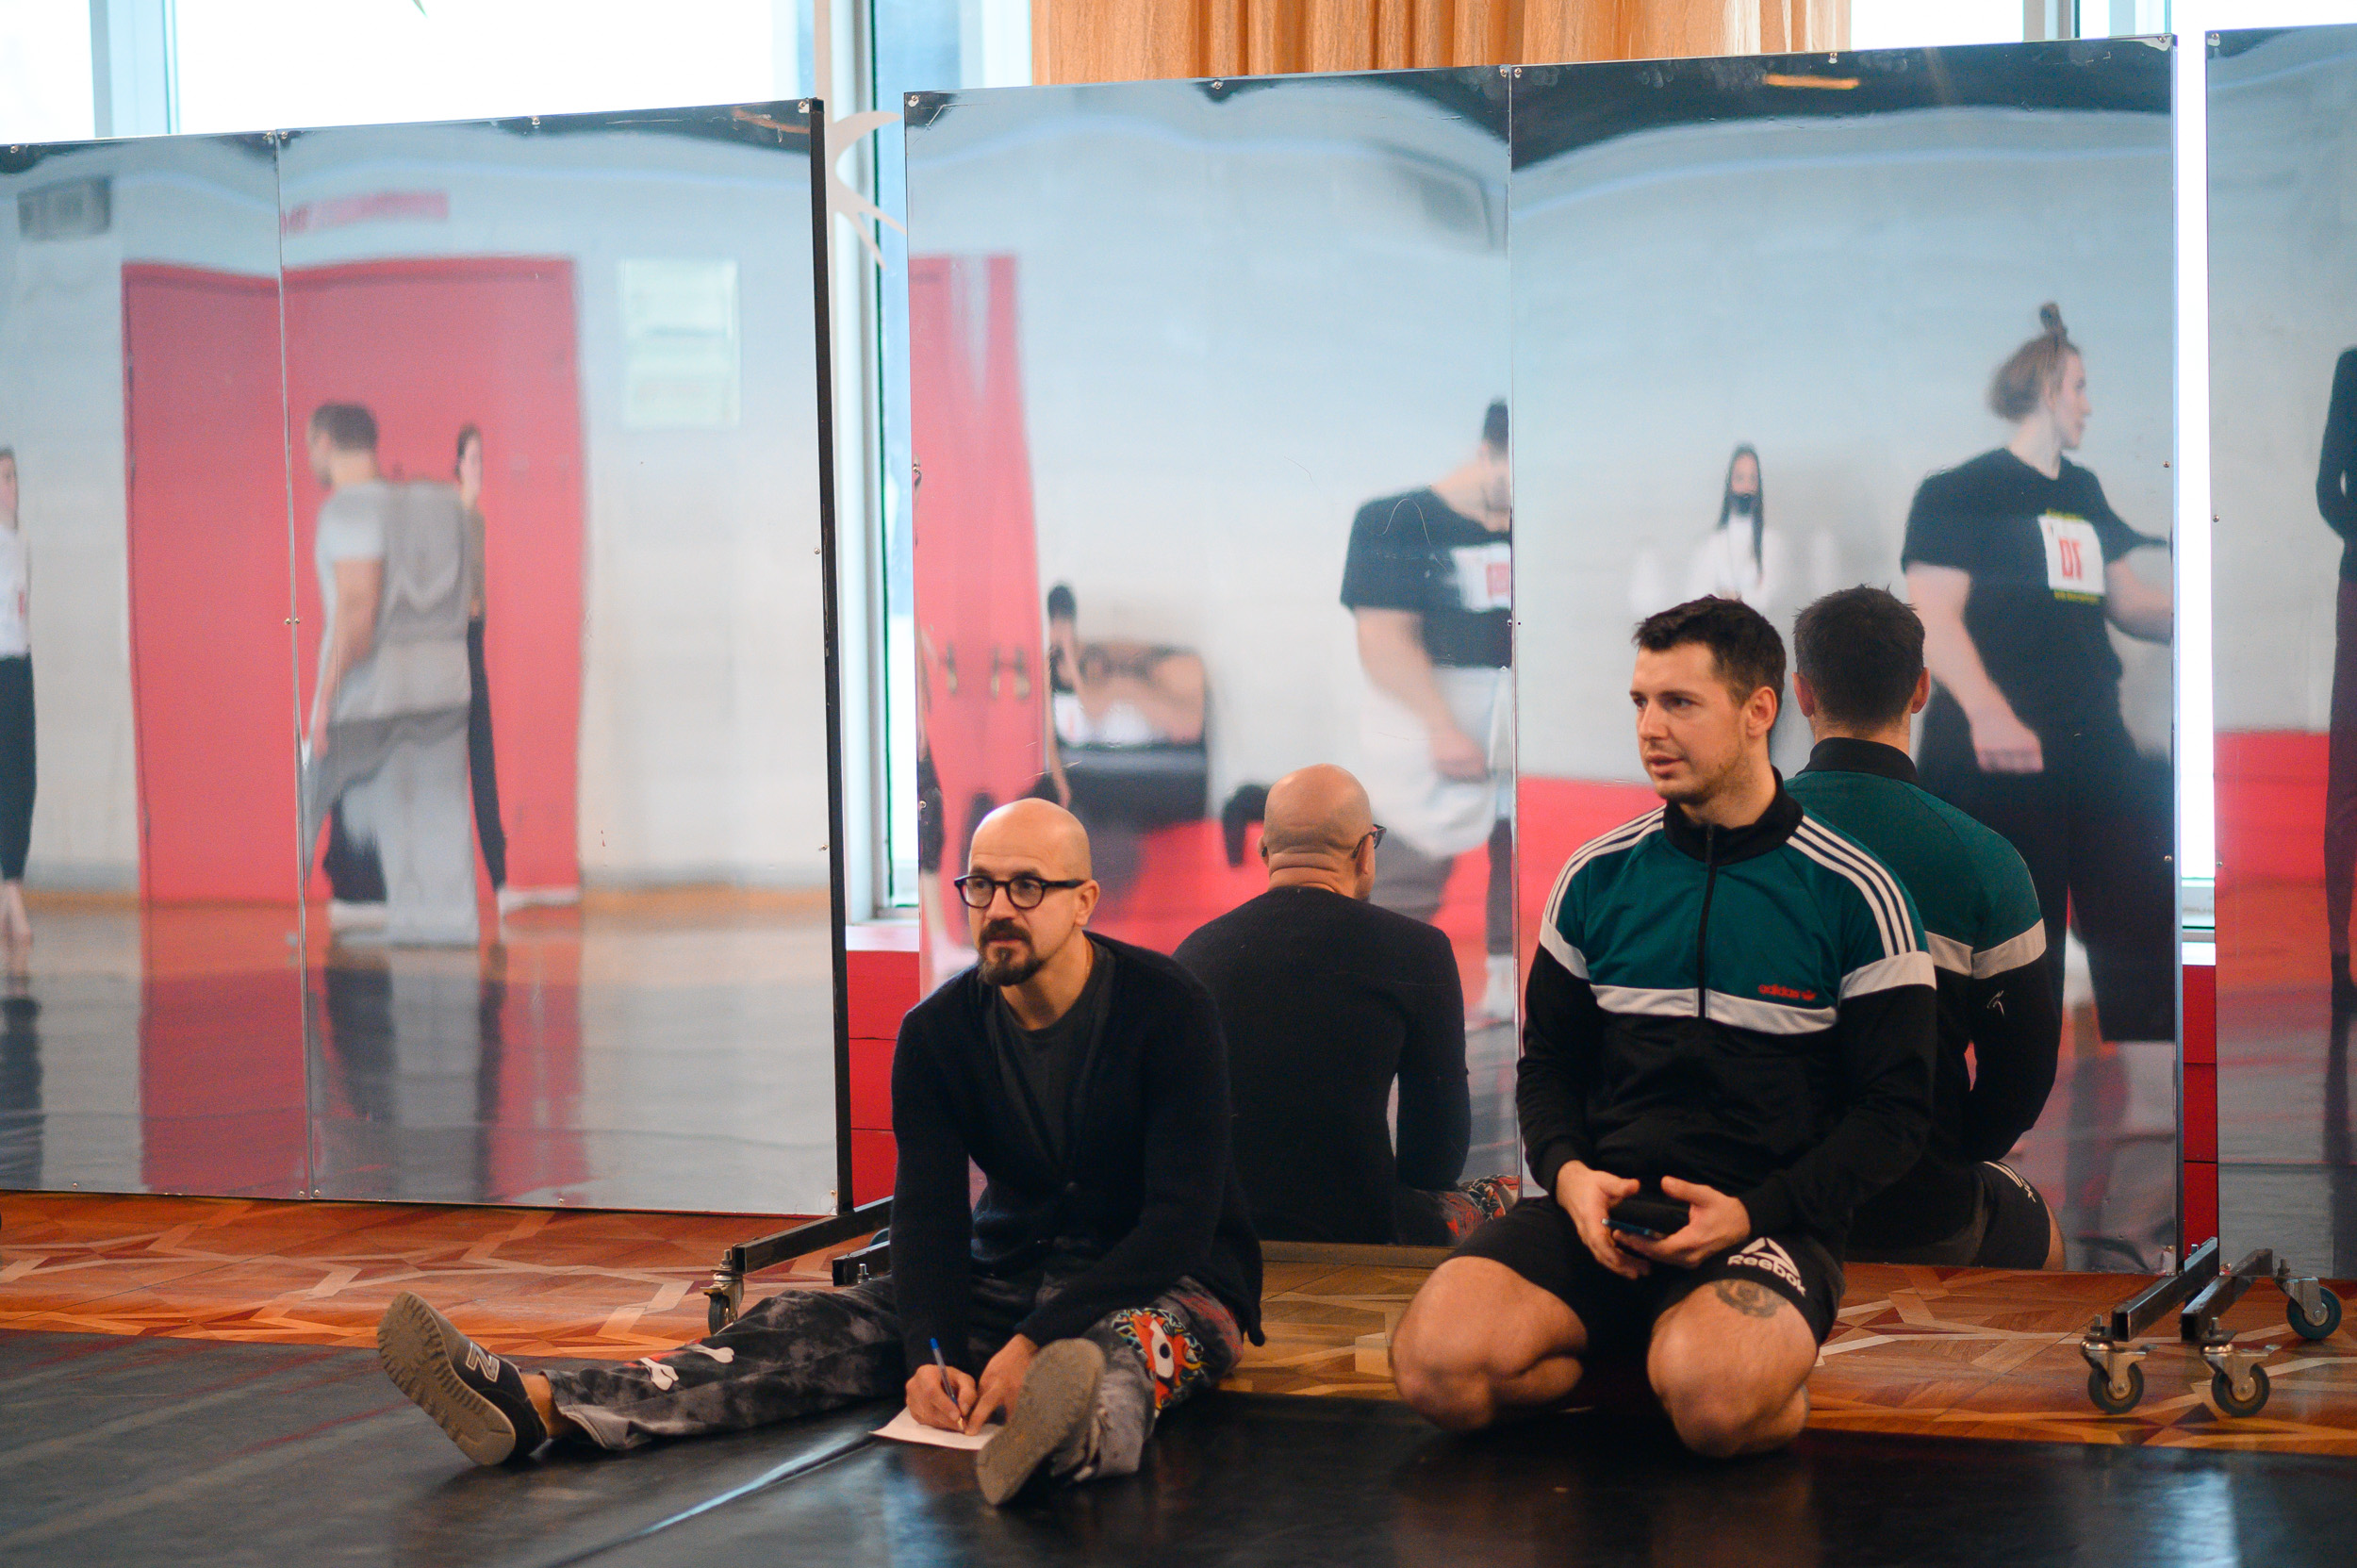 На фото - Егор Дружинин и Дмитрий Масленников во время кастинга в спектакль "Мы". Фото предоставлено пресс-службой "Театра-Театра".